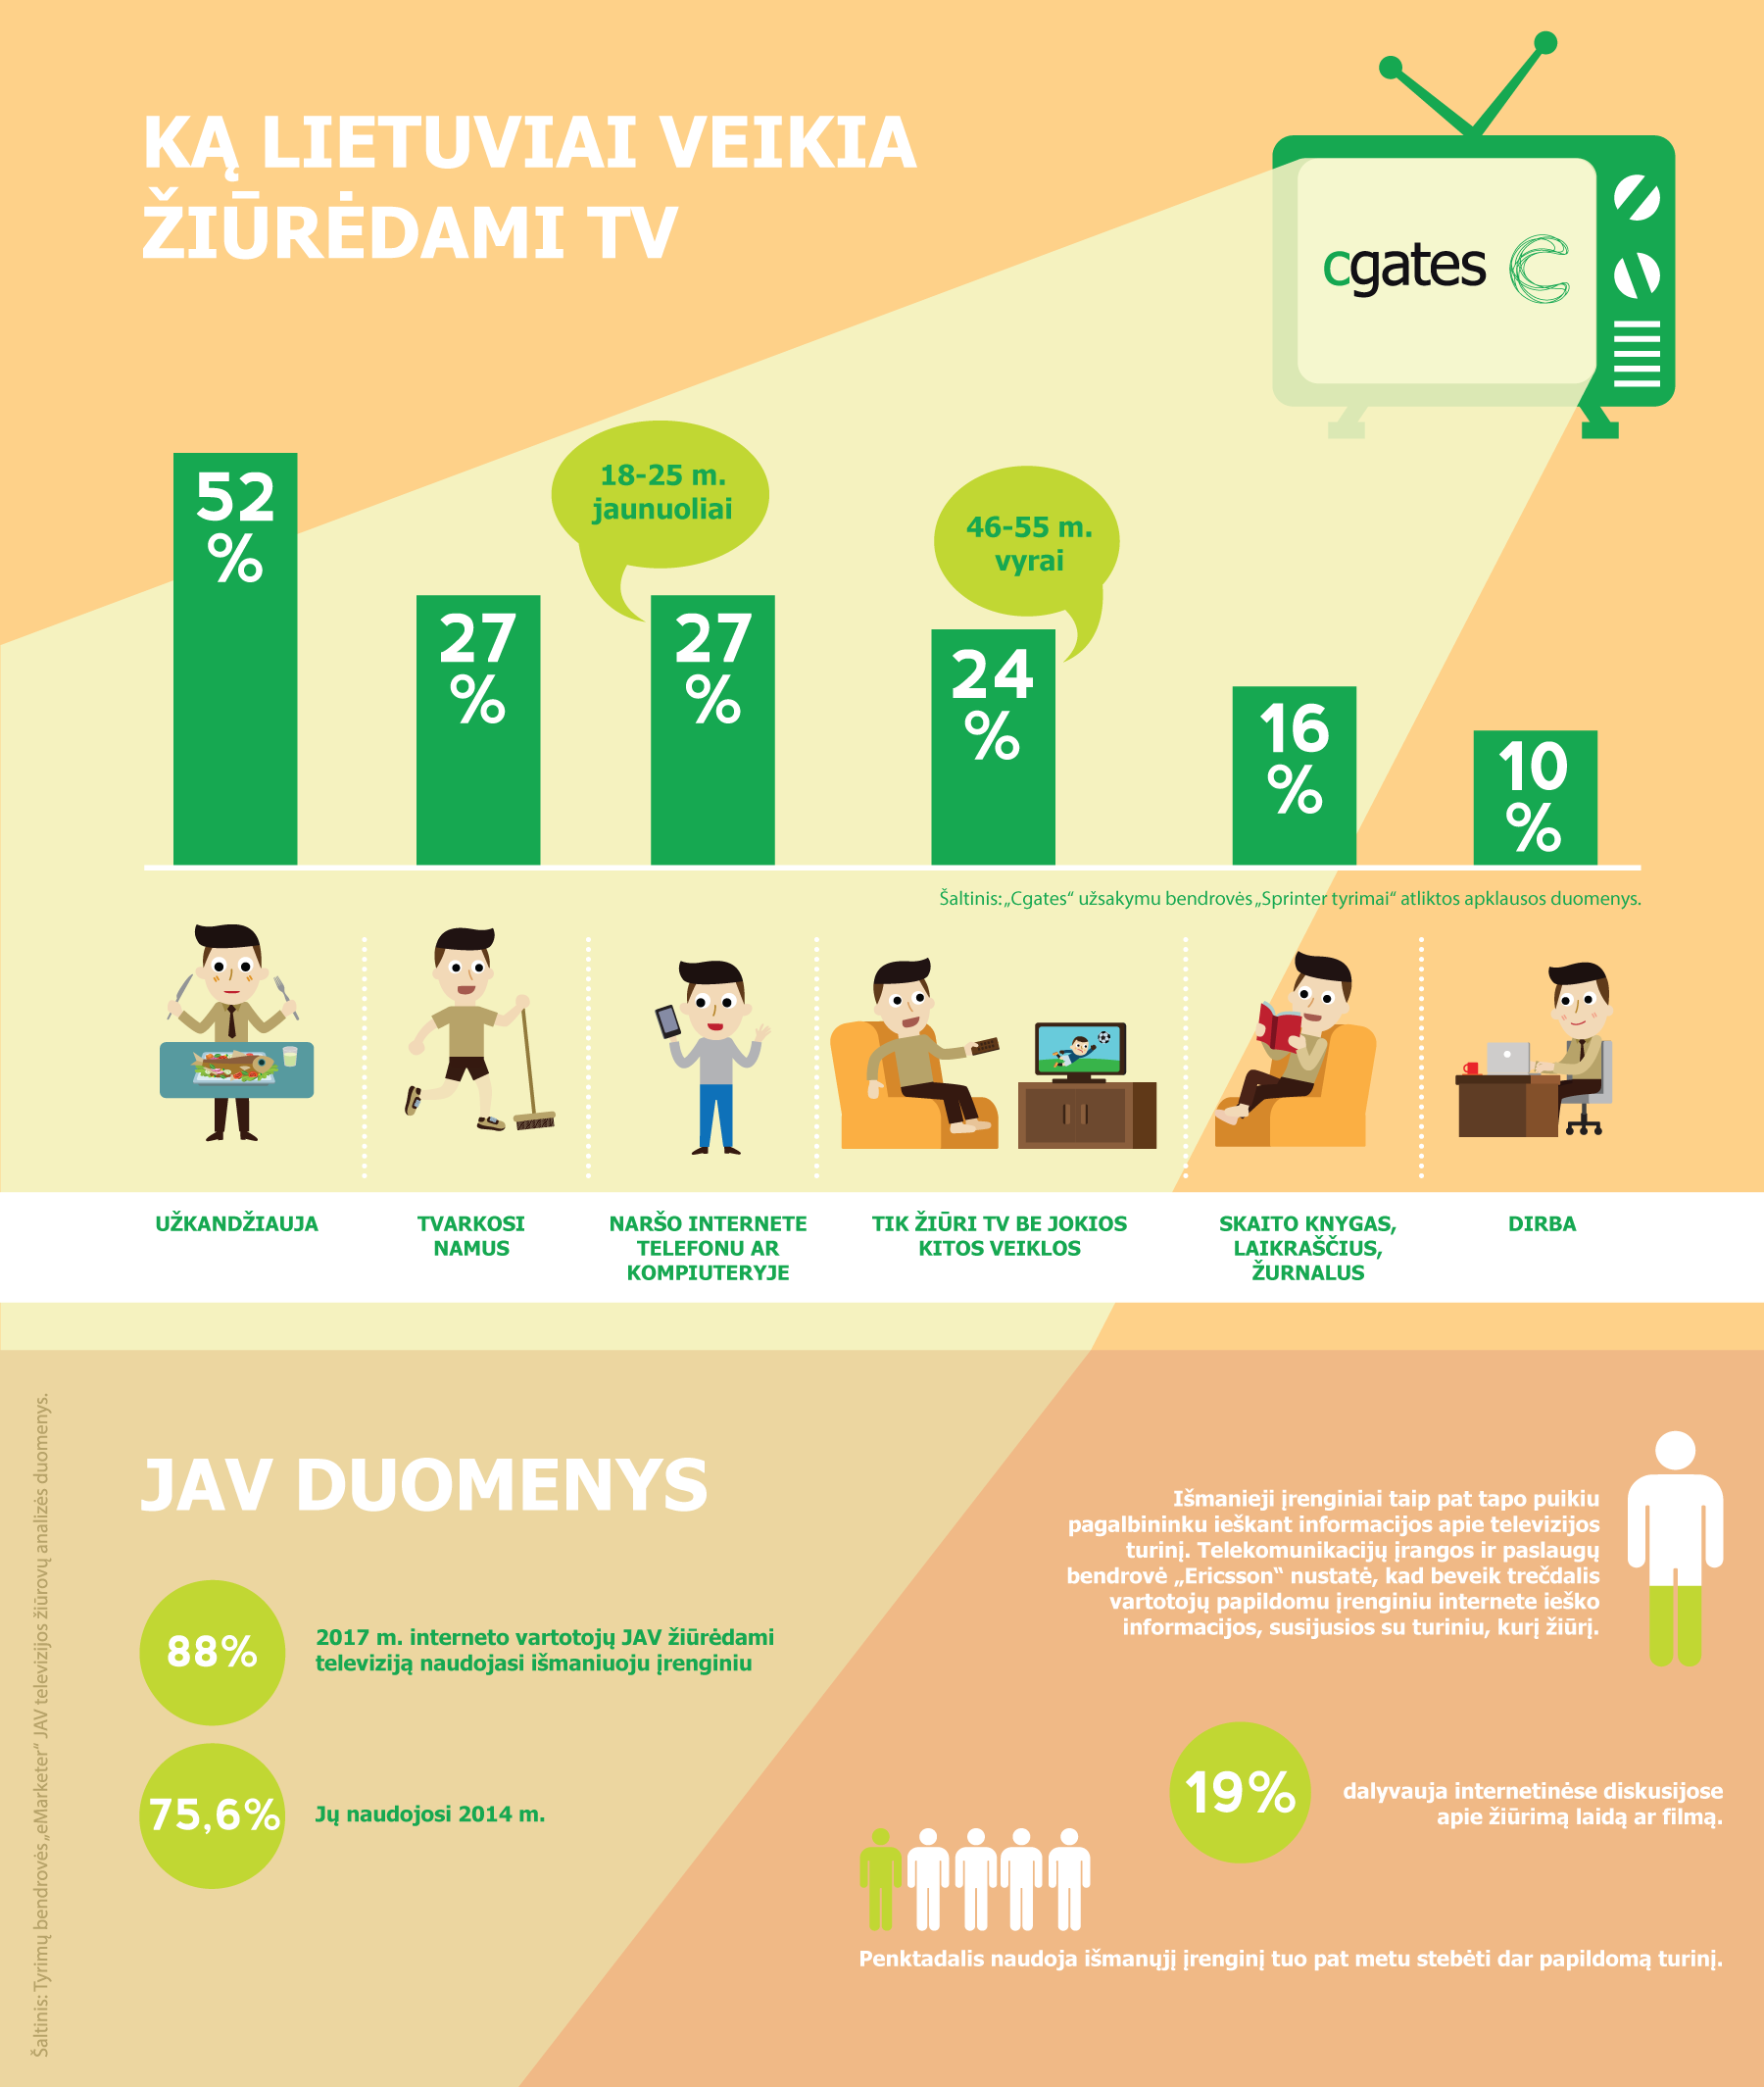 Tyrimas atskleidė, ką lietuviai mėgsta veikti prie televizoriaus